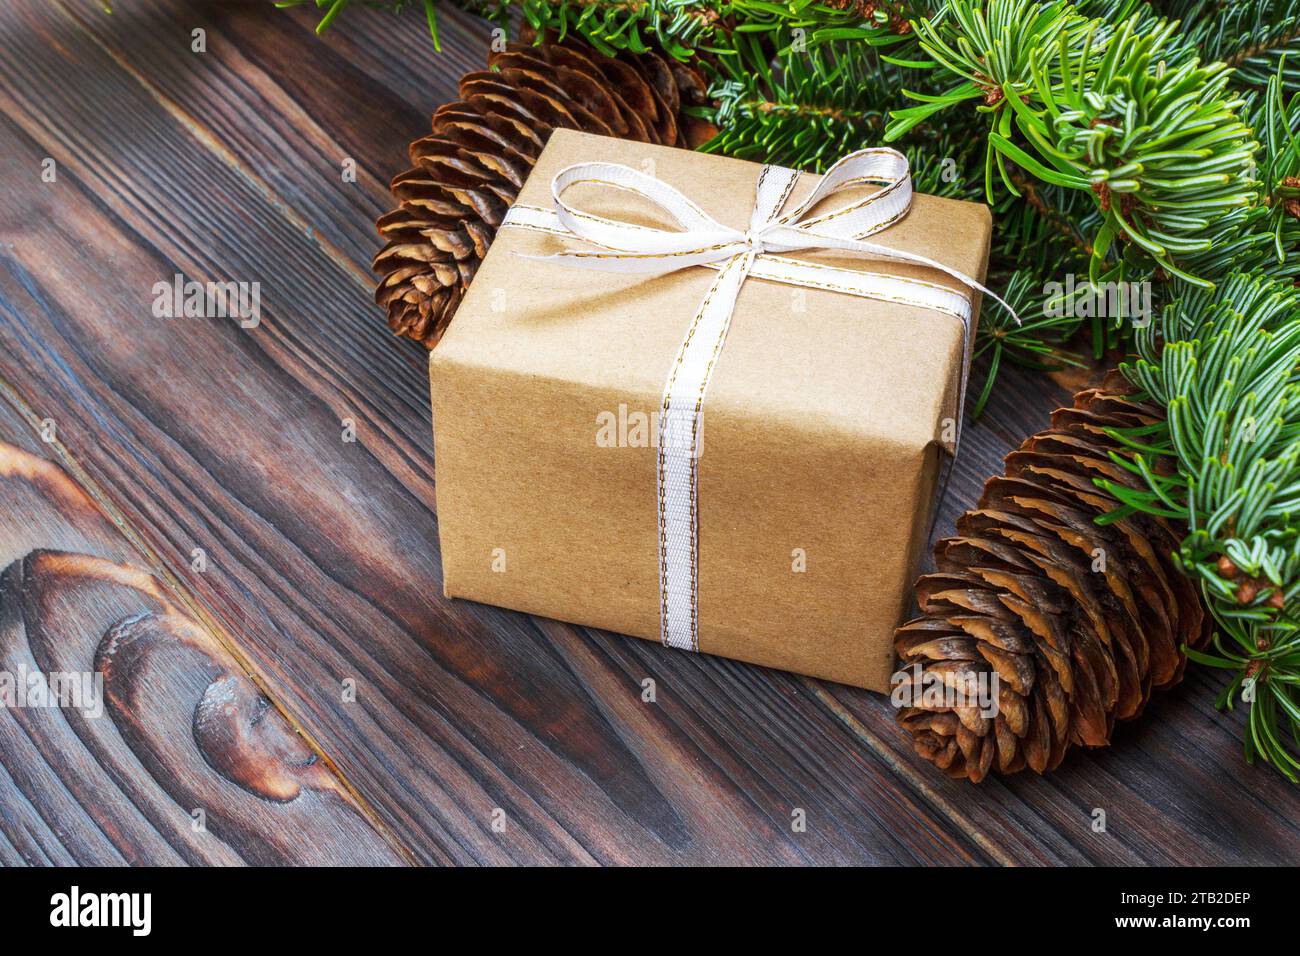 Weihnachten Komposition. Weihnachten Geschenk, gestrickte Decke, Tannenzapfen, tannenzweigen auf hölzernen weißen Hintergrund. Flach, Ansicht von oben. Stockfoto